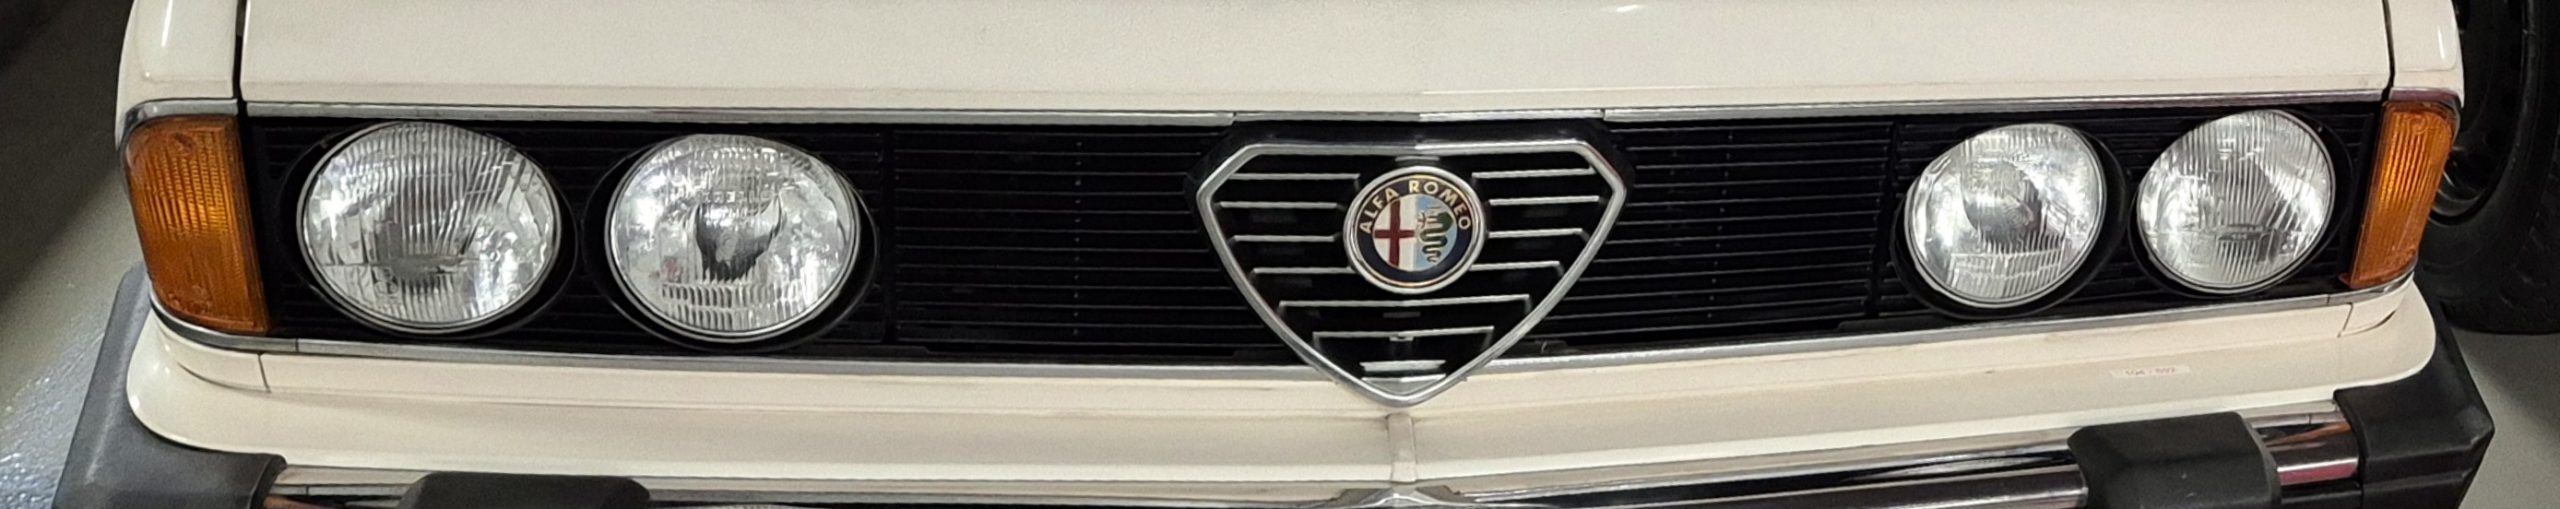 Alfaclub Alfa Romeo 6 Register